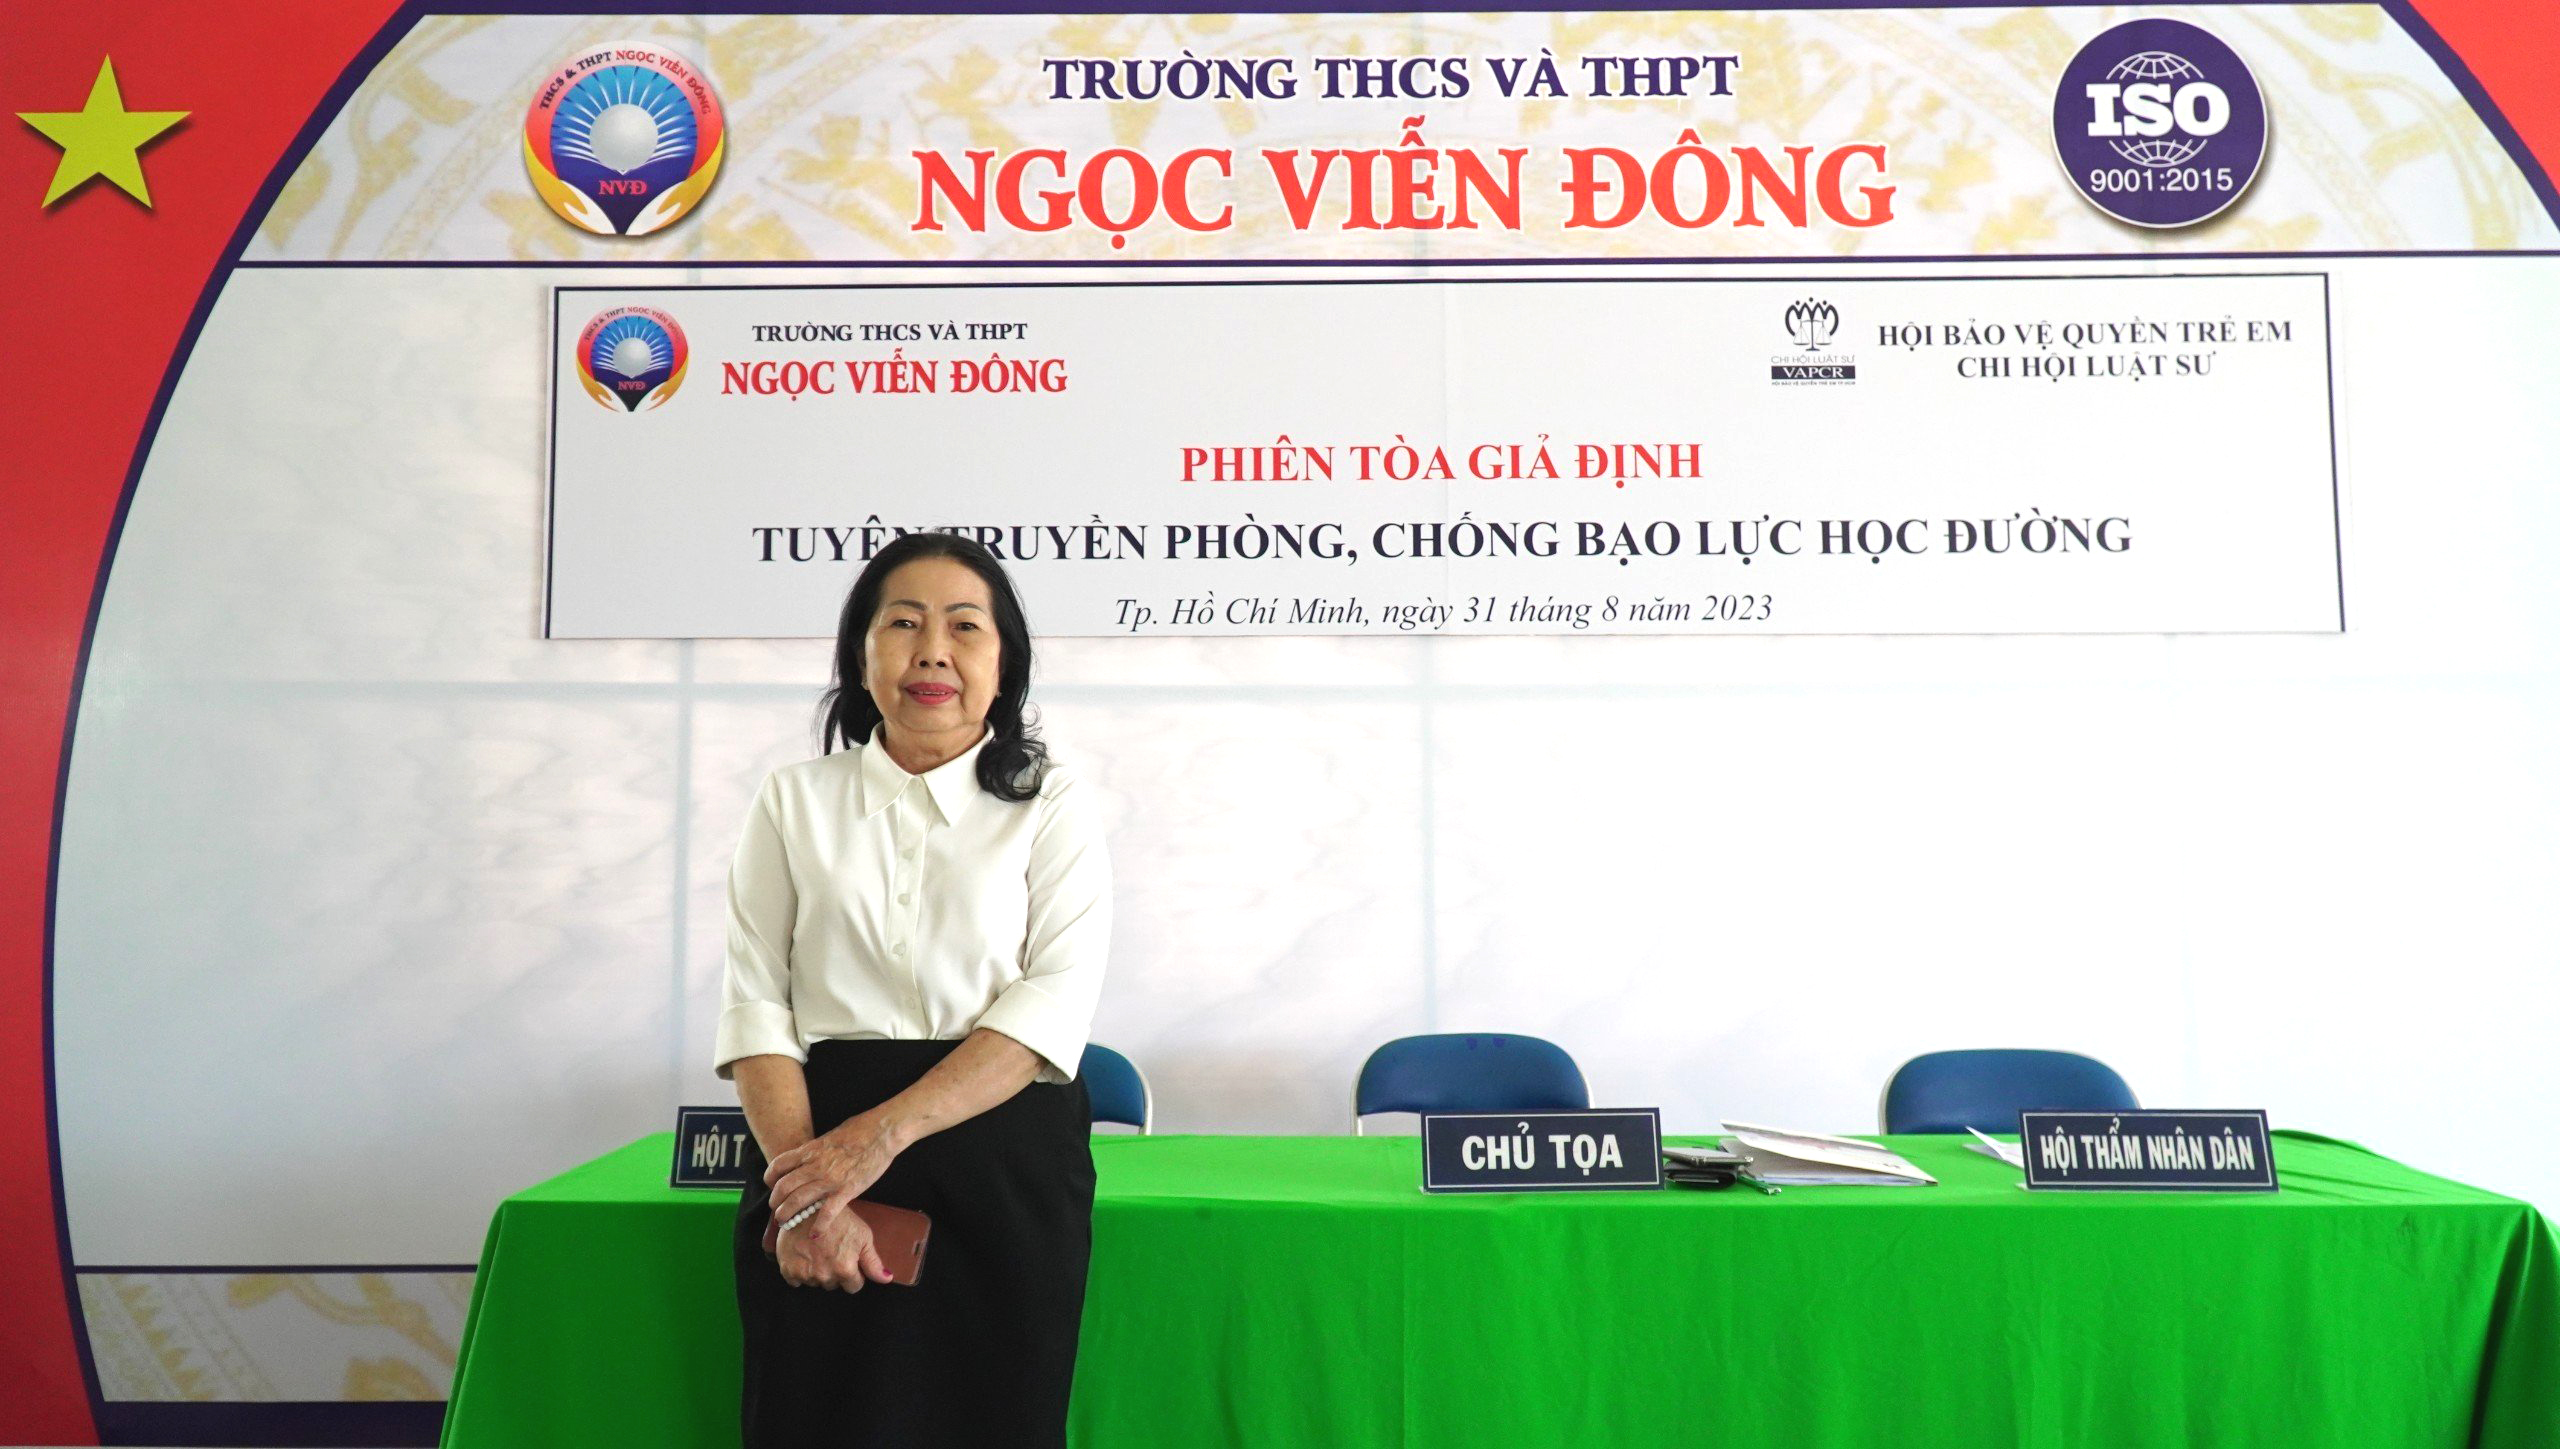 Luật sư Trần Thị Ngọc Nữ tại phiên tòa giả định tổ chức tại trường THCS và THPT Ngọc Viễn Đông